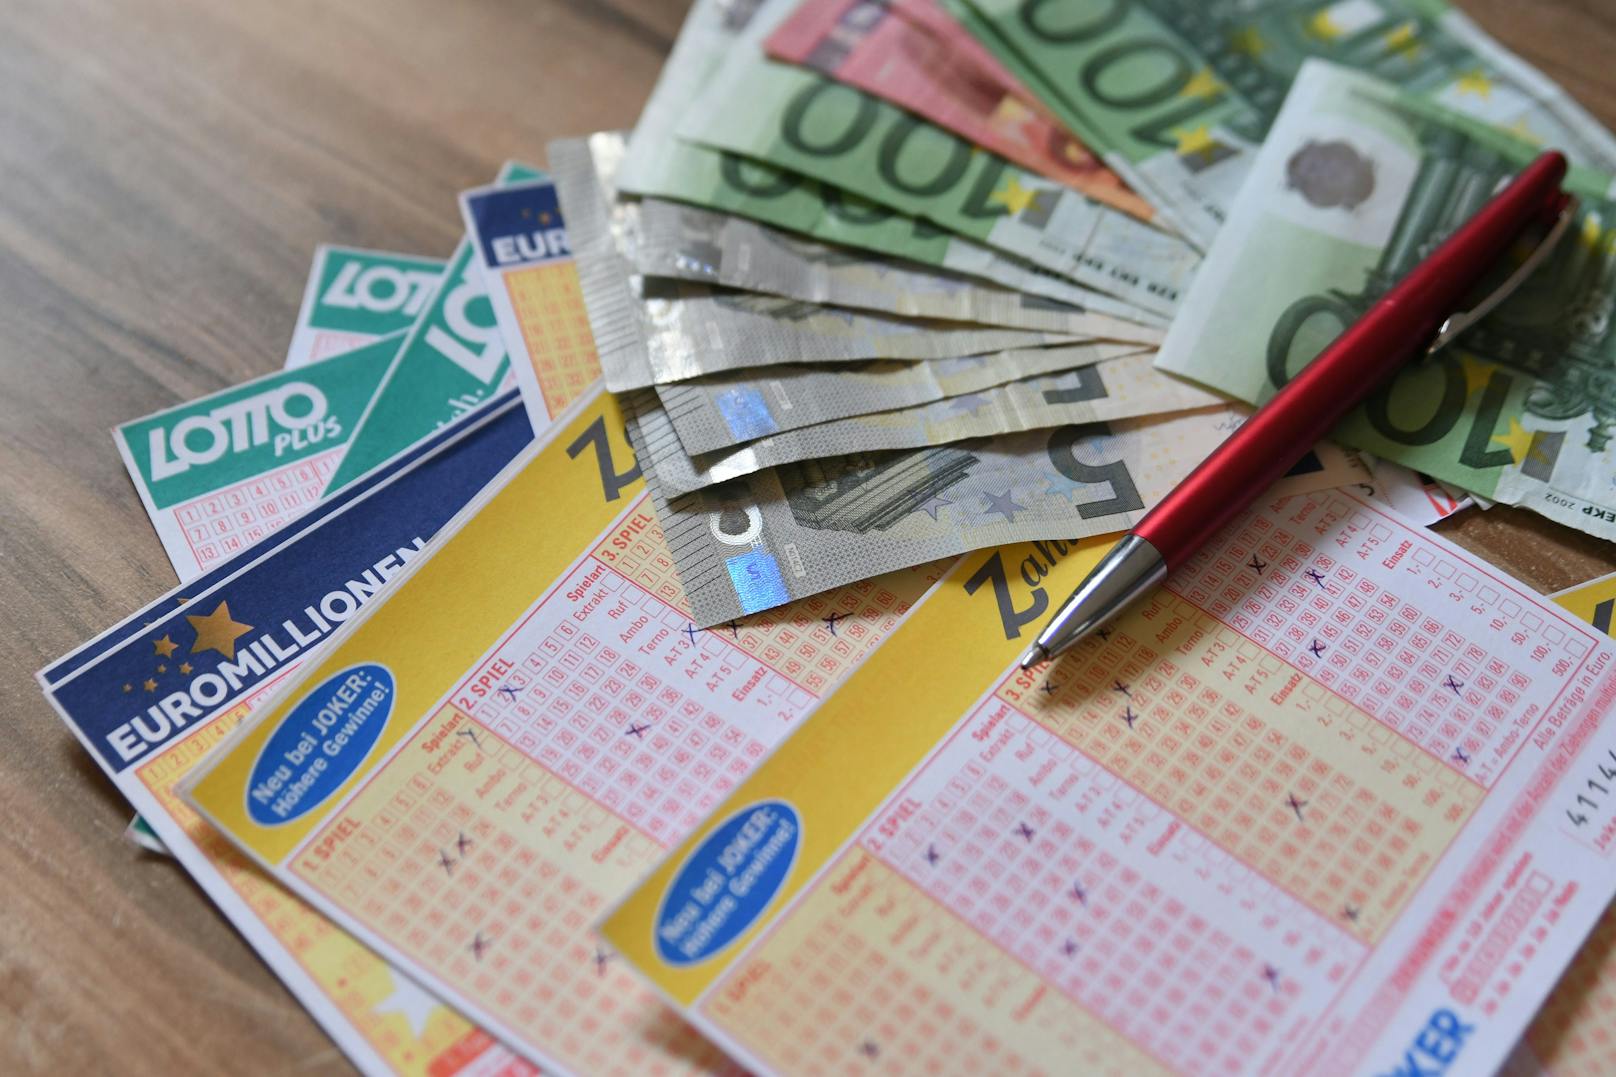 Trafikant aus NÖ schlägt Alarm: "Menschen spielen viel weniger Lotto bei mir als früher"